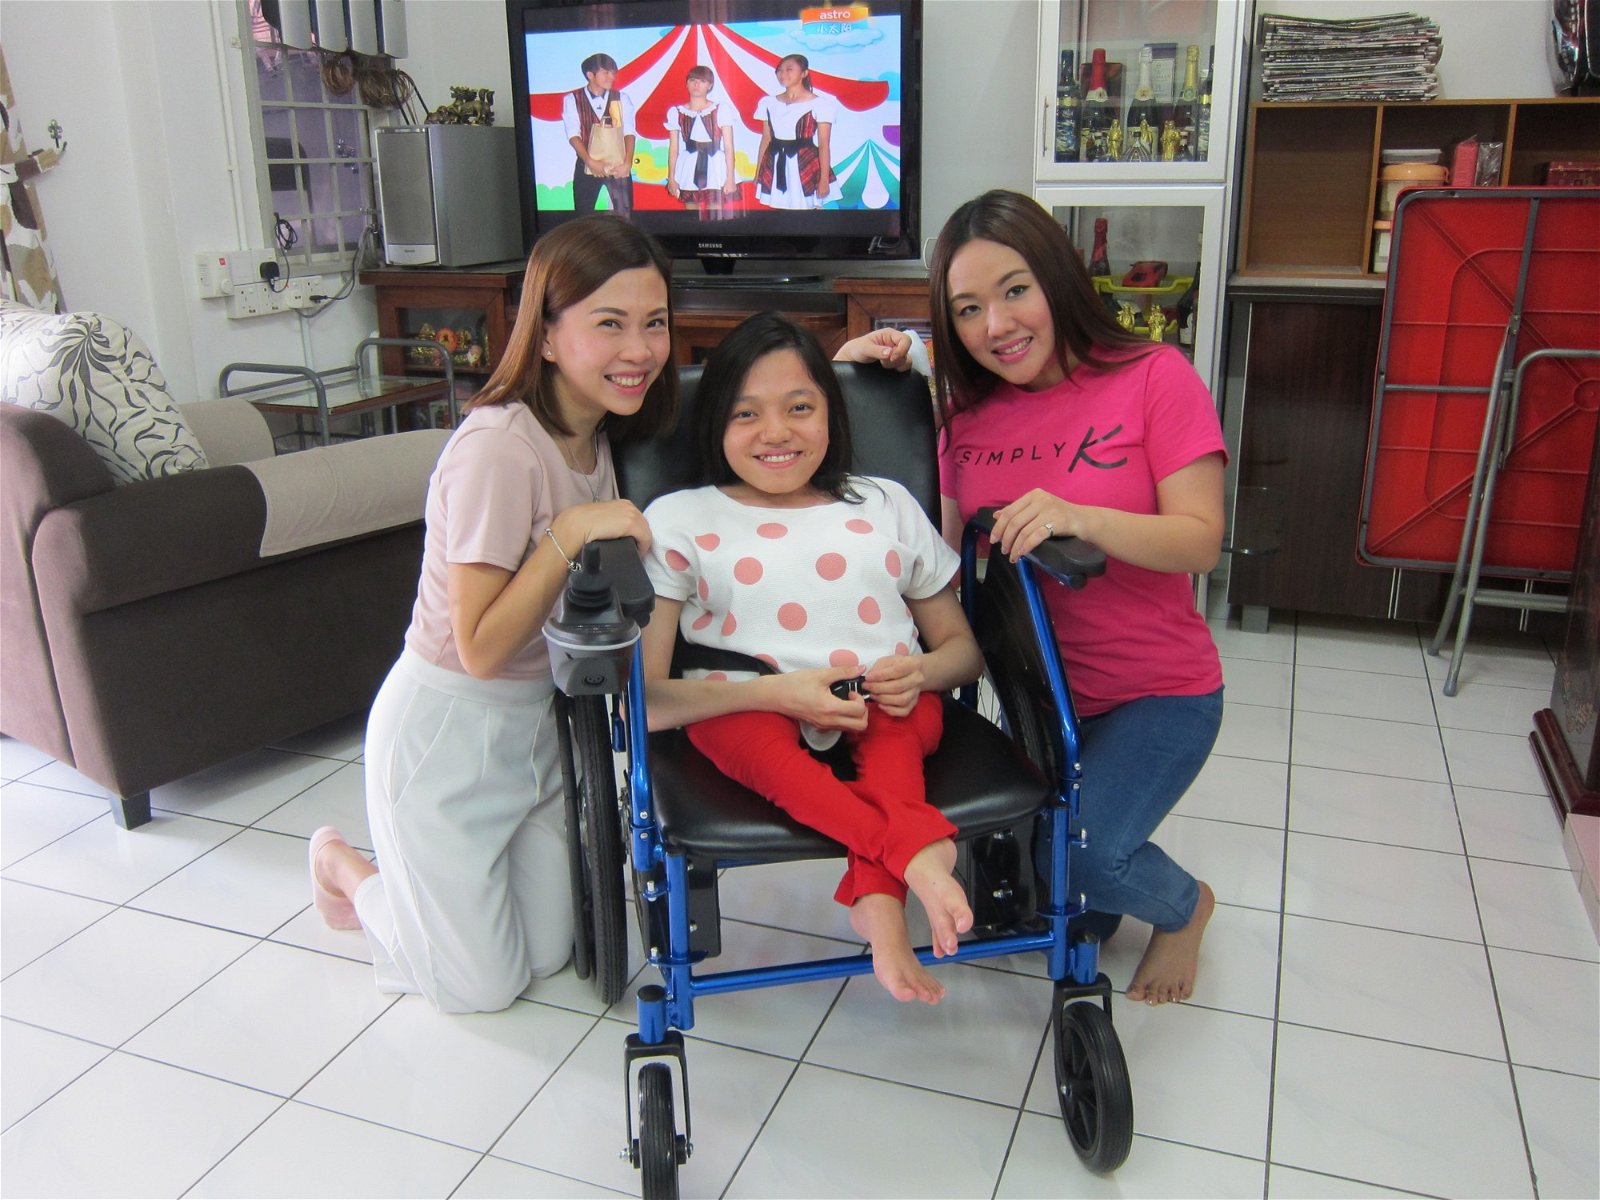 意识到余晓碧需要一张轮椅， 李嘉镁透过社交网站筹款，友人陈韦君（左）只用了3 天即成功向身边人筹得逾4000令吉，给余晓碧买了张电动轮椅。（摄影：张真甄）